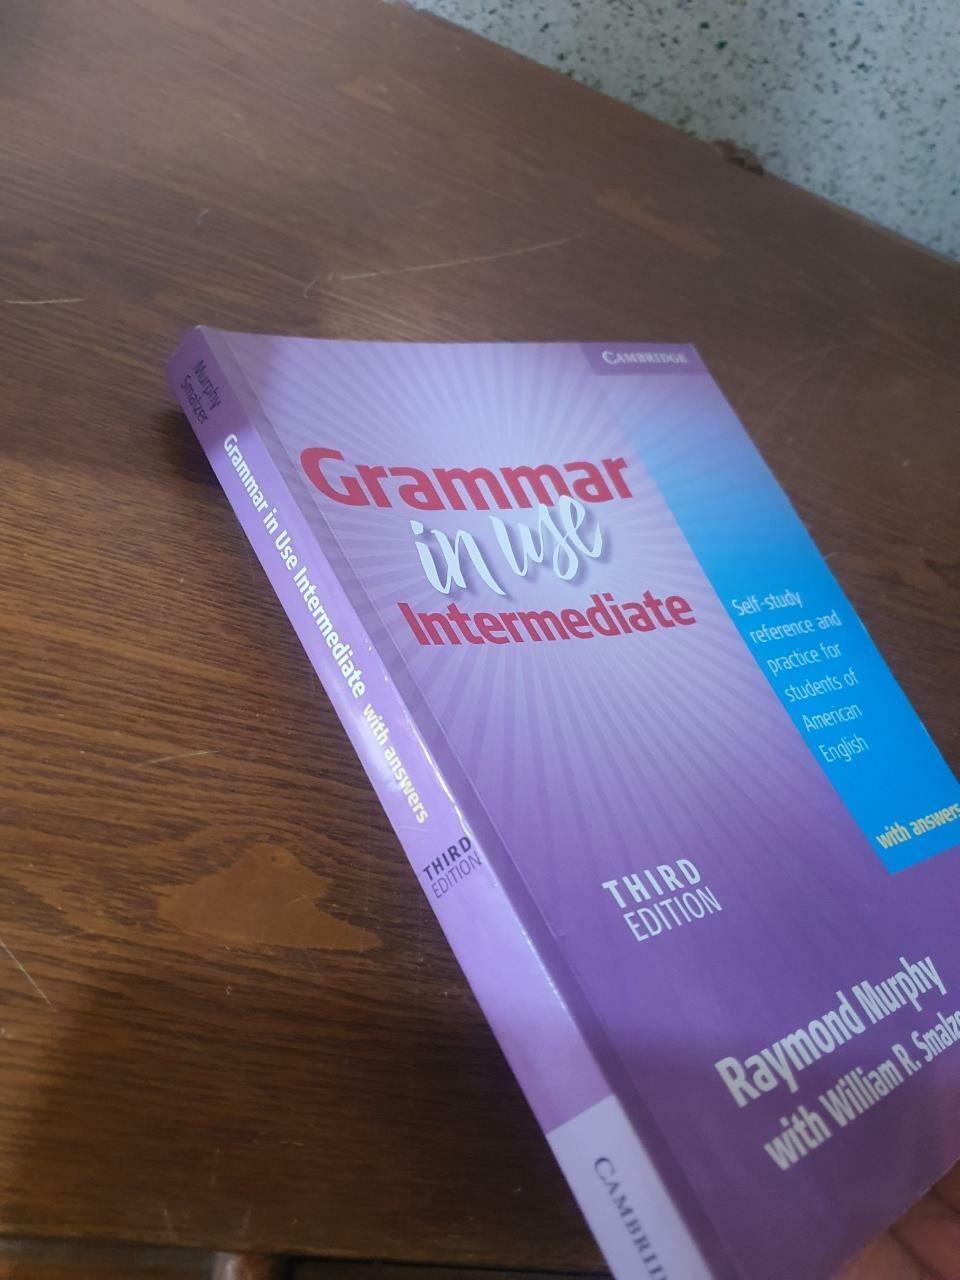 [중고] Grammar in Use Intermediate Student‘s Book with Answers Korean Edition: Self-Study Reference and Practice for Students of American English (Paperback, 3)